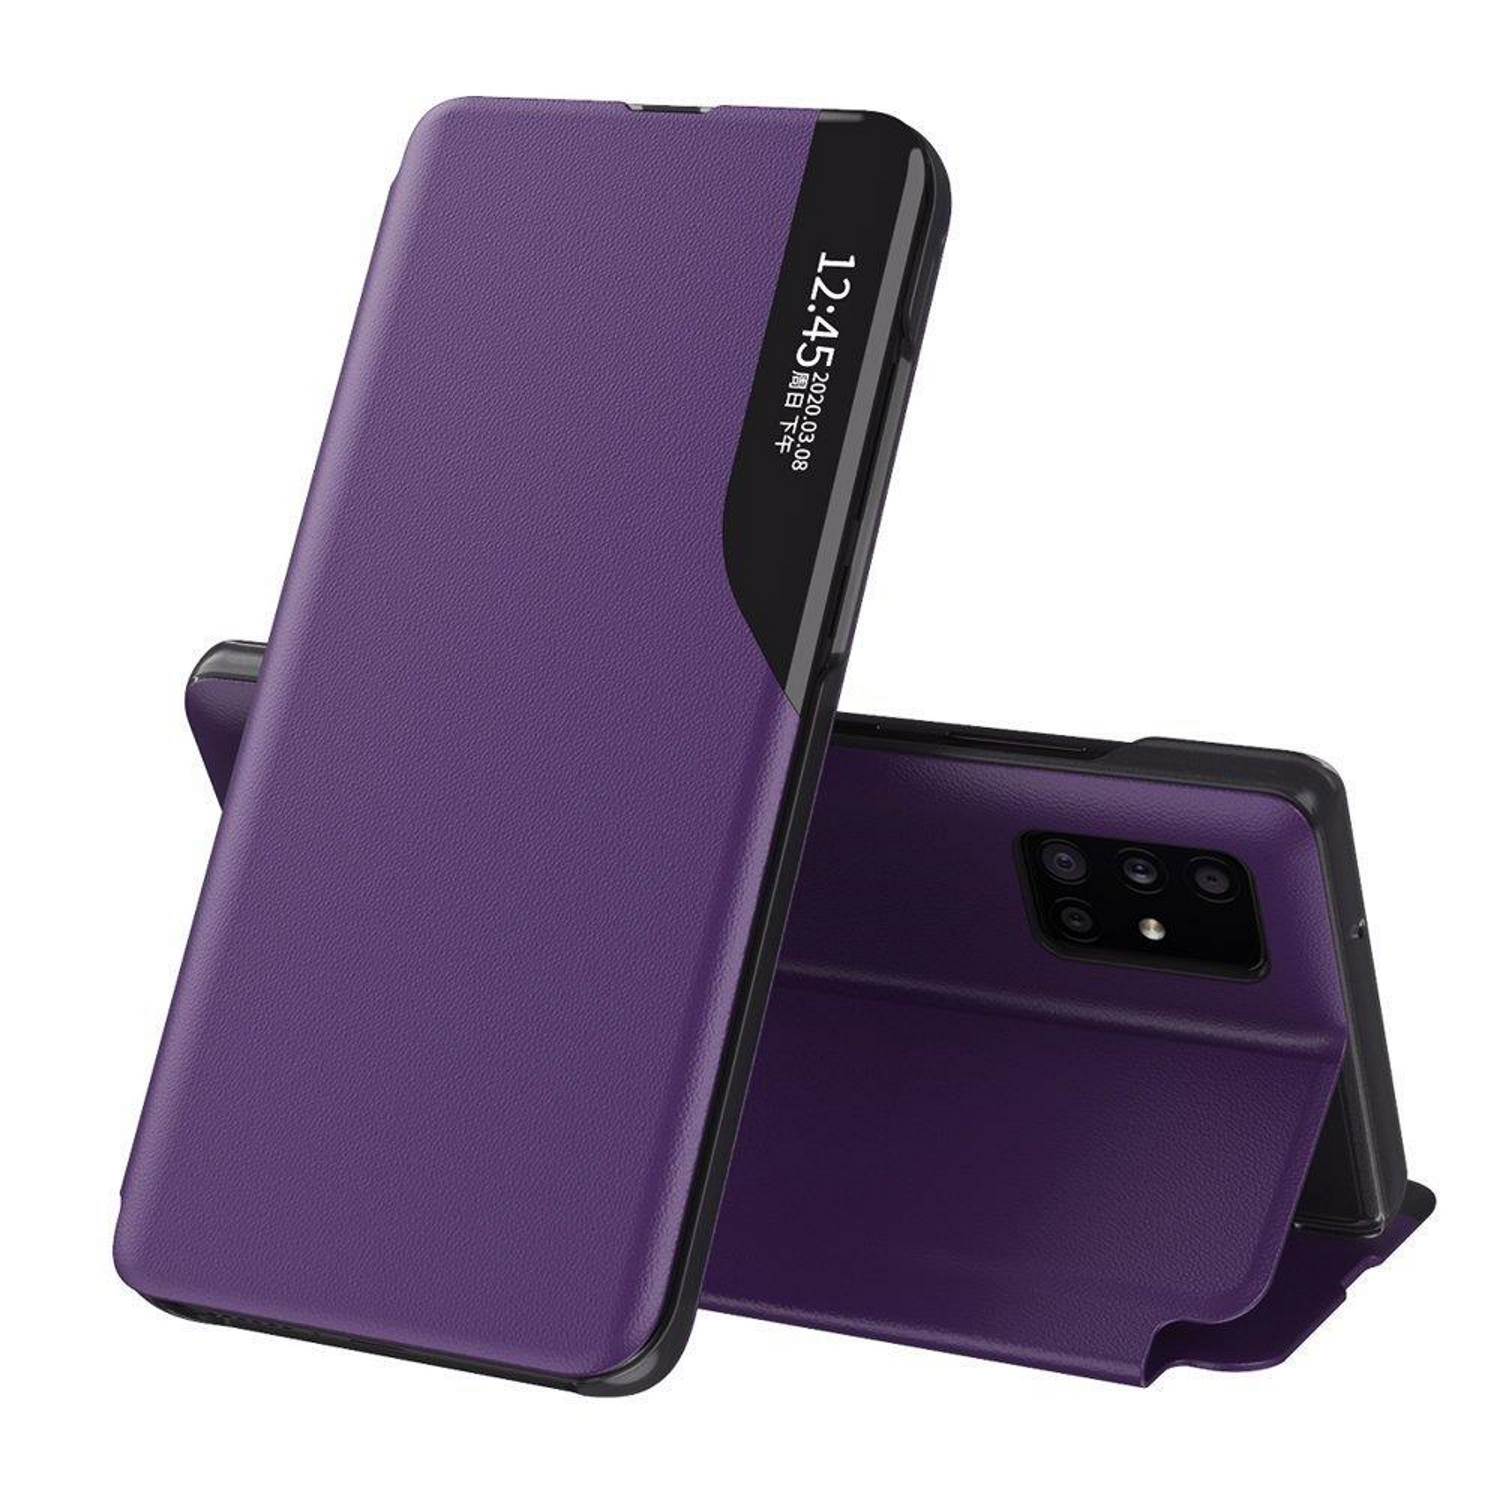 COFI View Violett Note Bookcover, Redmi Max, Pro Xiaomi, 9 Case, Smart